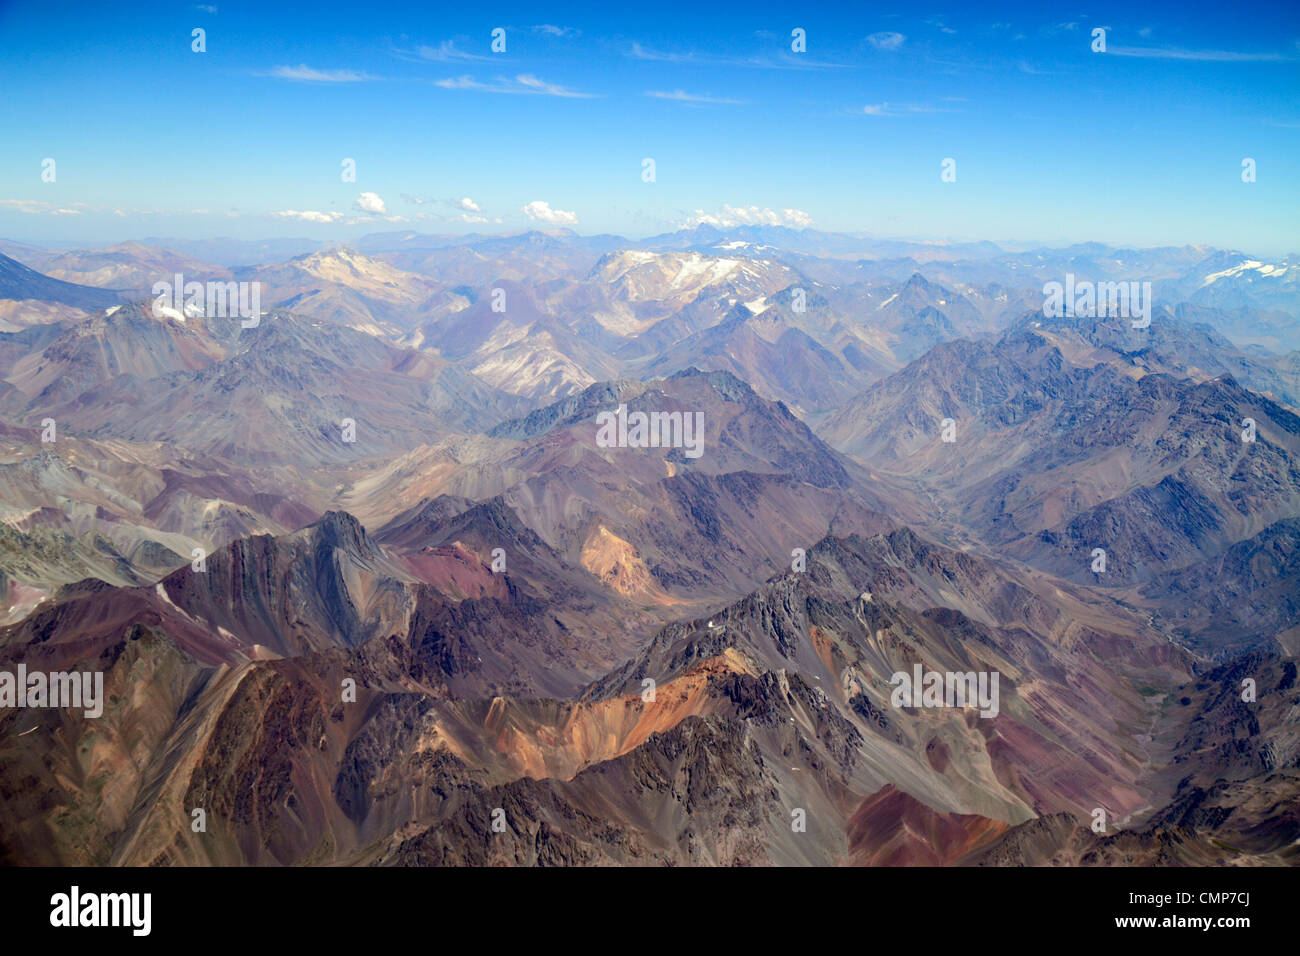 Santiago Chile,Andes Mountains,LAN Airlines,vol à Mendoza,vue sur les sièges de fenêtre,vue aérienne du dessus,science,géographie,gamme,topographie,pere Banque D'Images